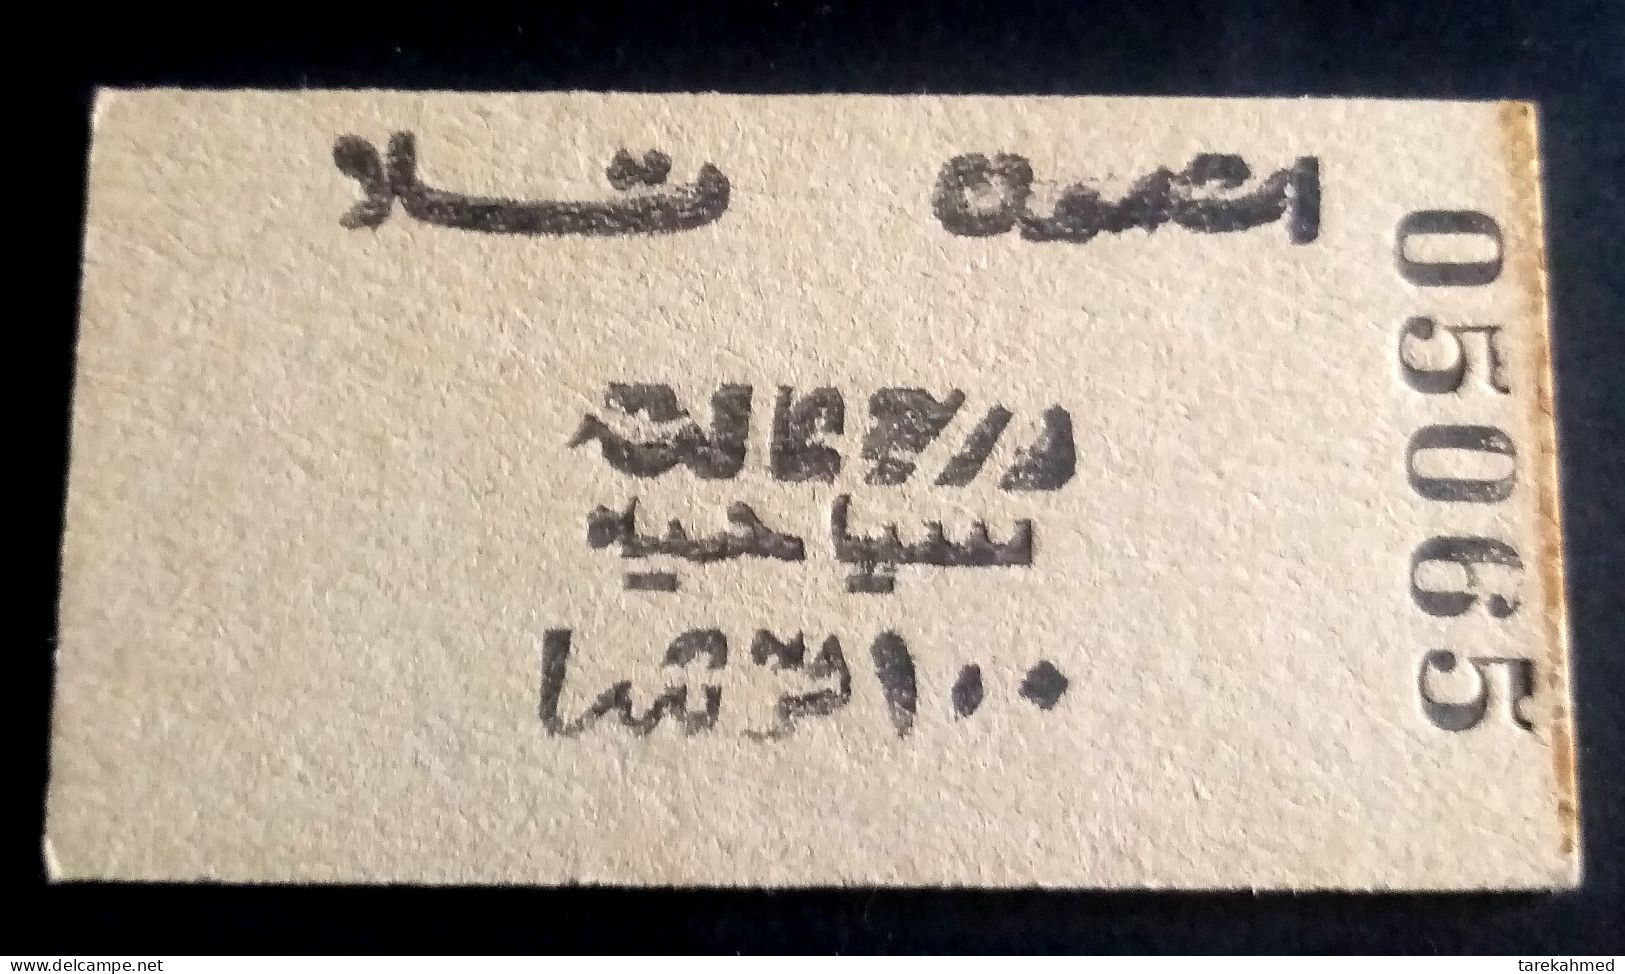 Egypt 70's, Rare Collection, Railway Ticket, Tala City To Ashmon City., 100 Piastres - World